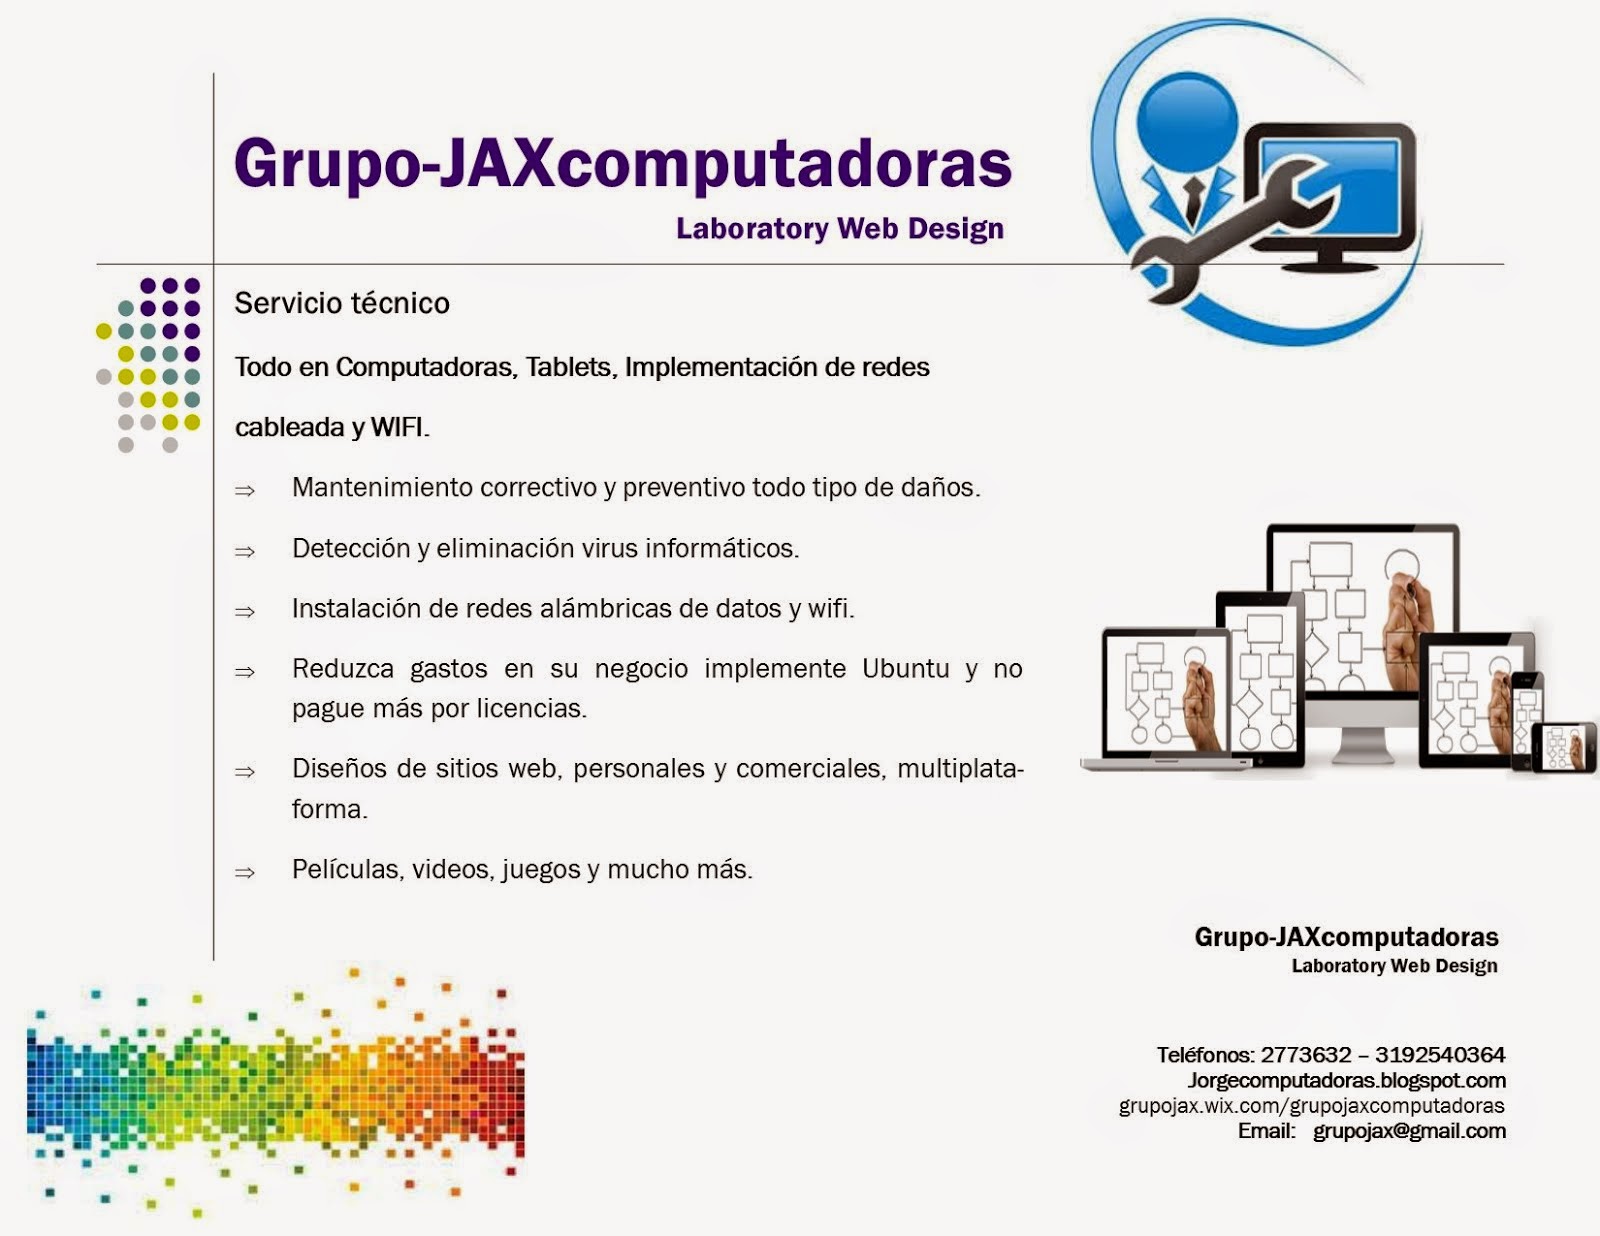 GrupoJAX Computadoras